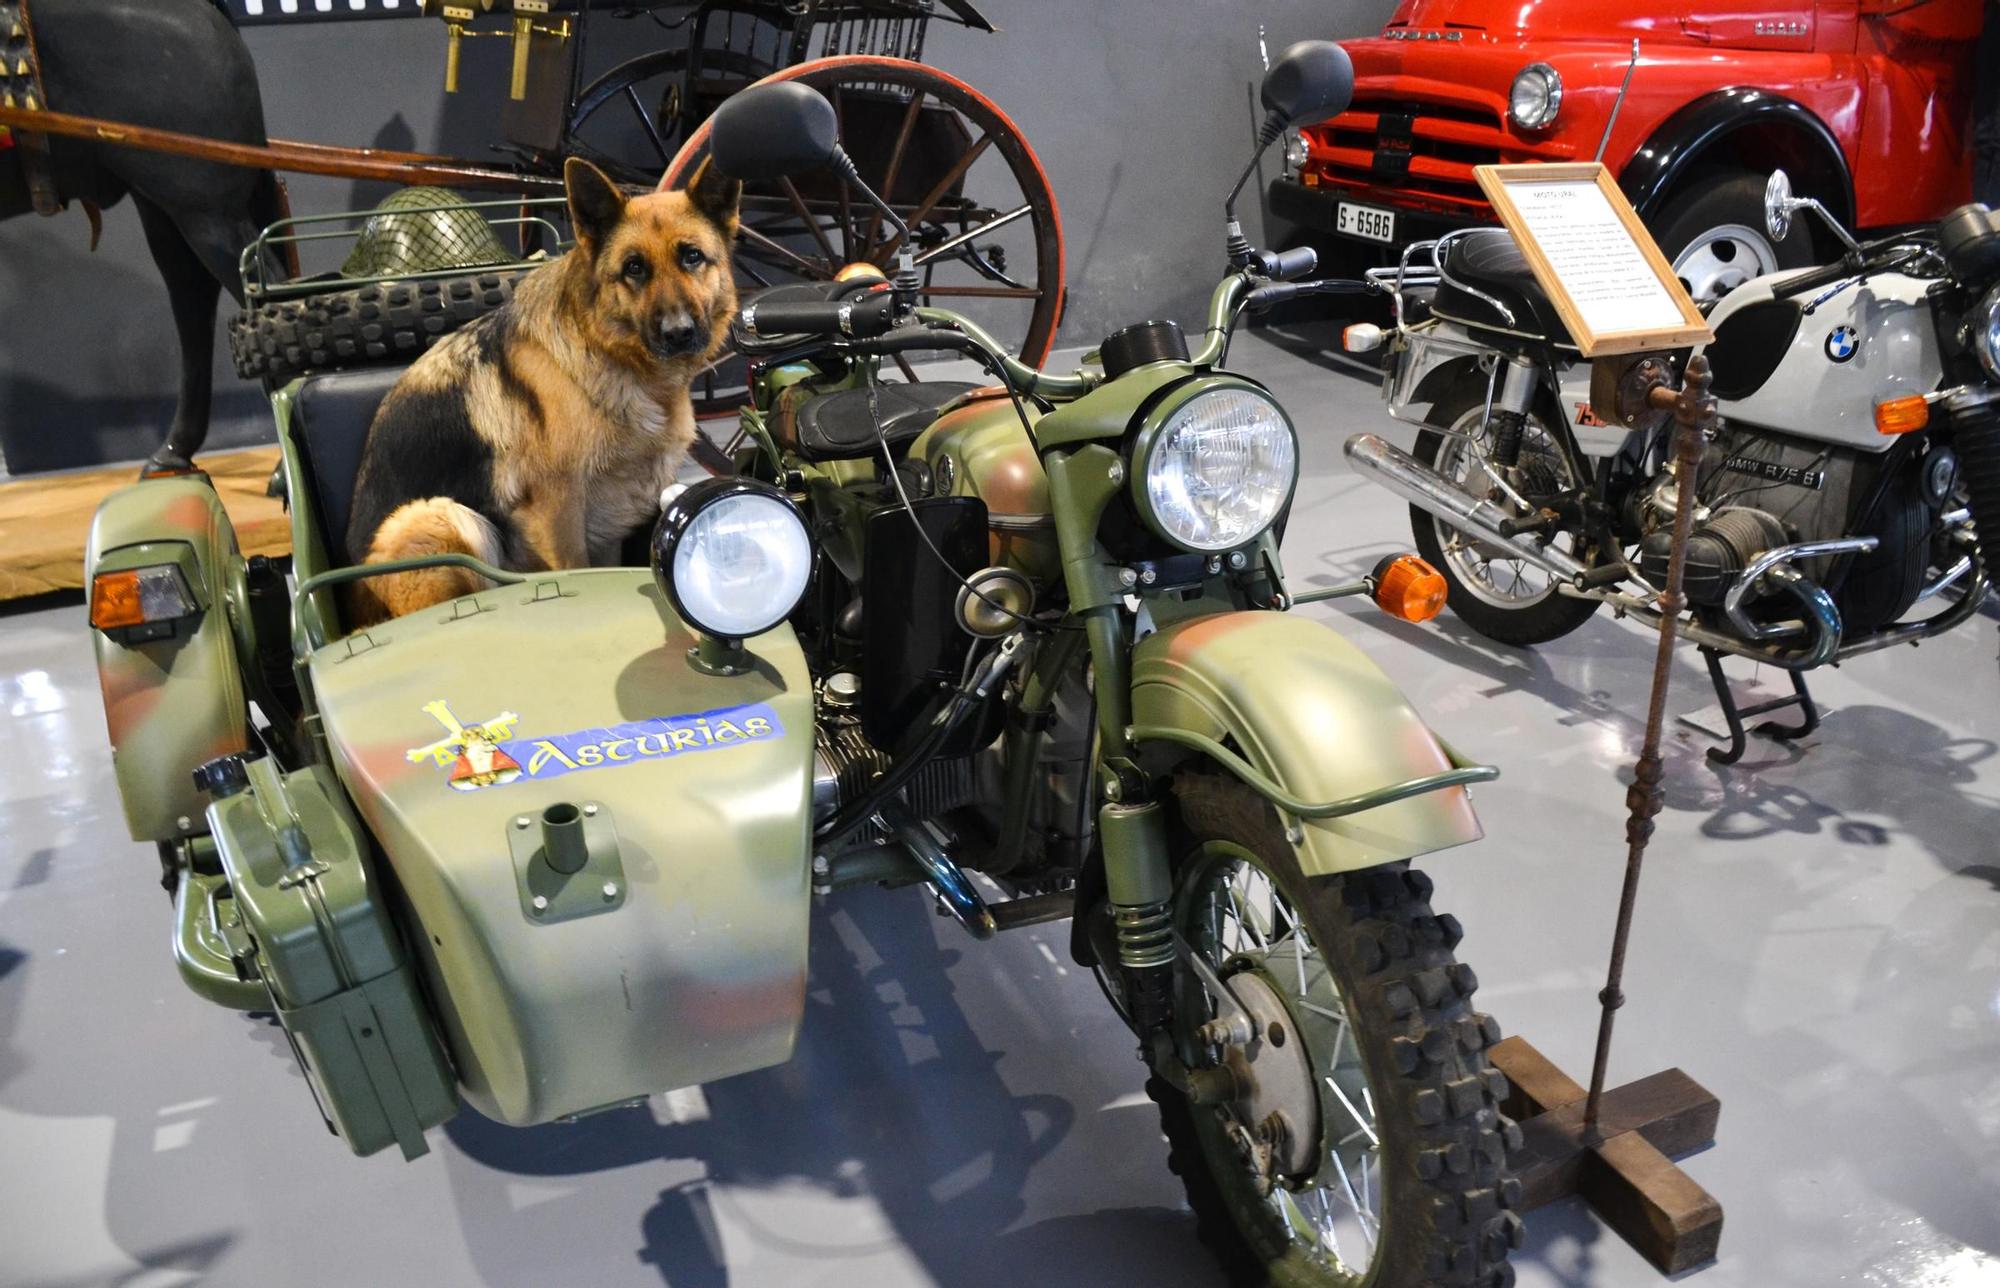 Ramy, la perra de Ángel Ménendez, posa para el periódico en el sidecar de una moto soviética de la II Guerra Mundial.